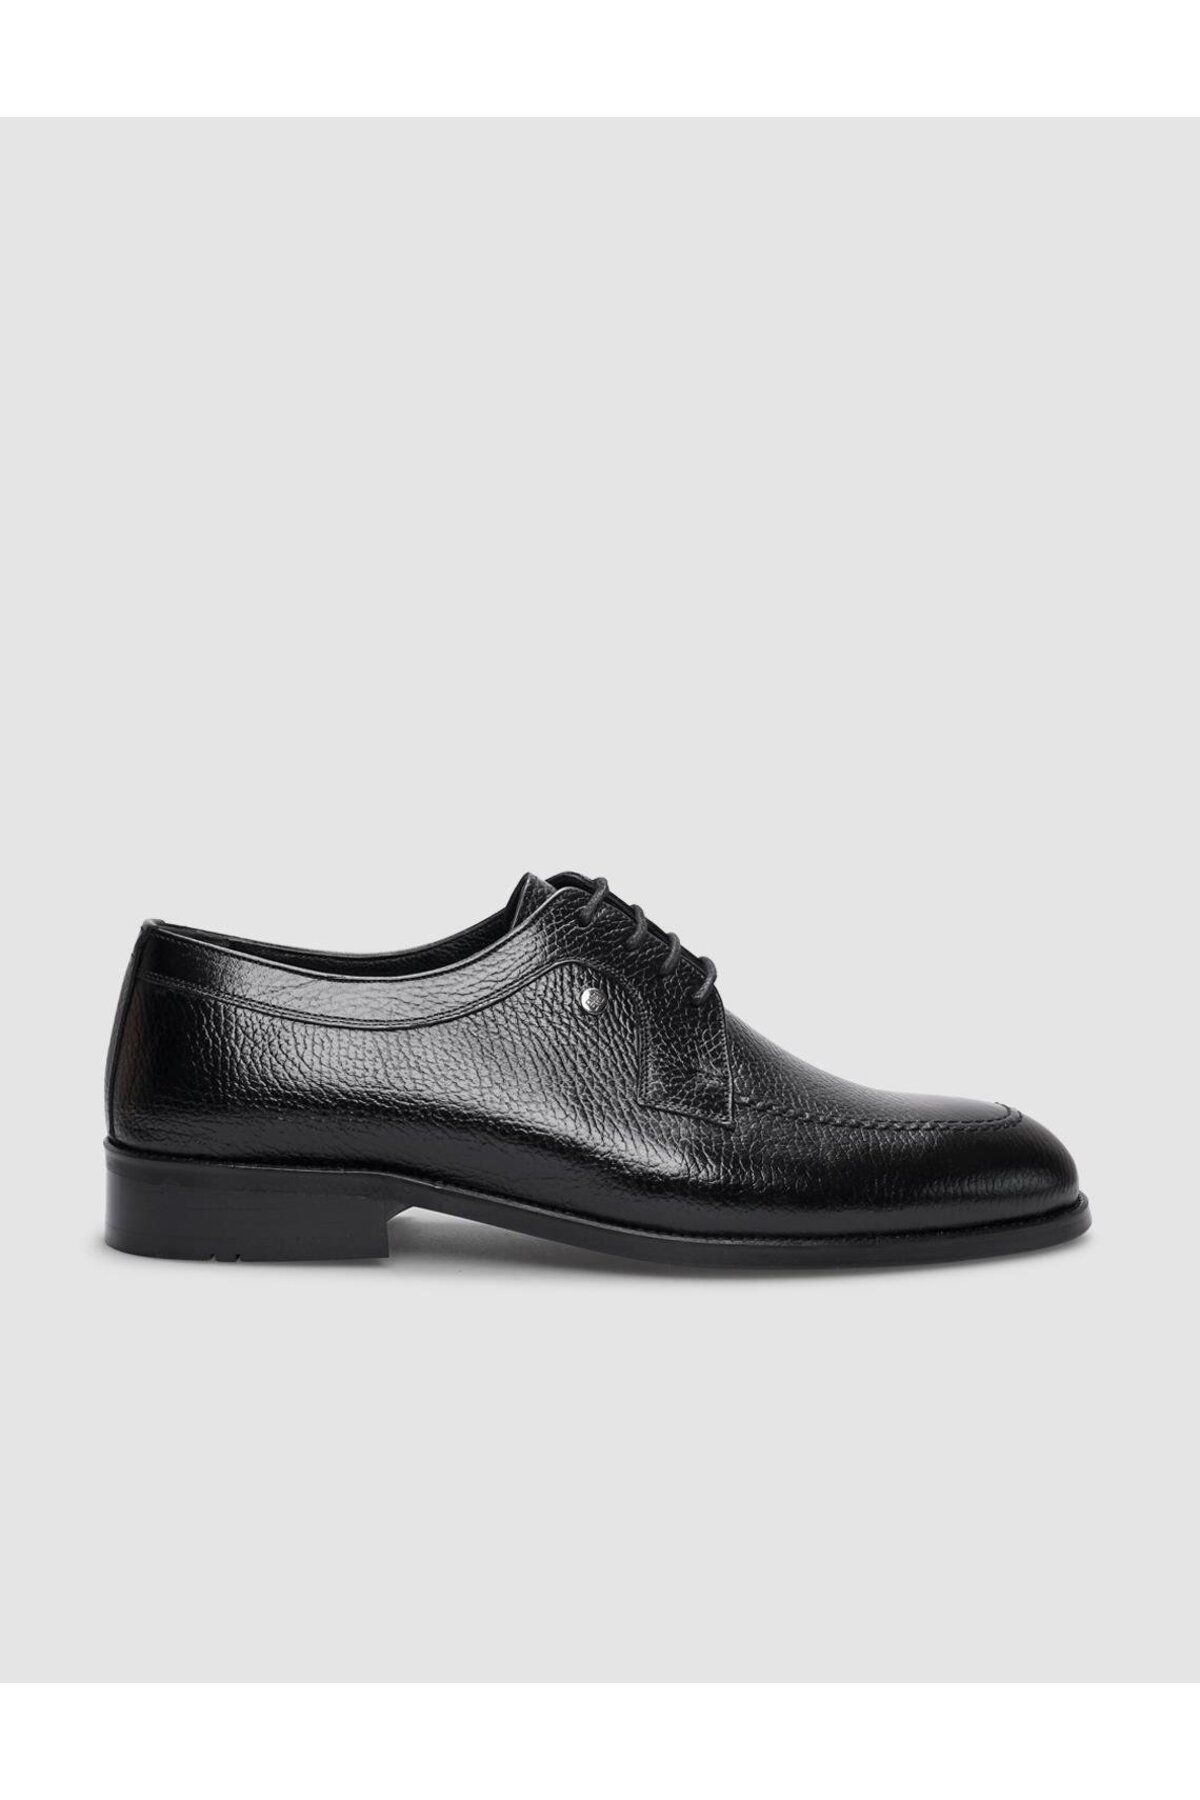 Cabani Hakiki Deri Siyah Bağcıklı Erkek Klasik Ayakkabı